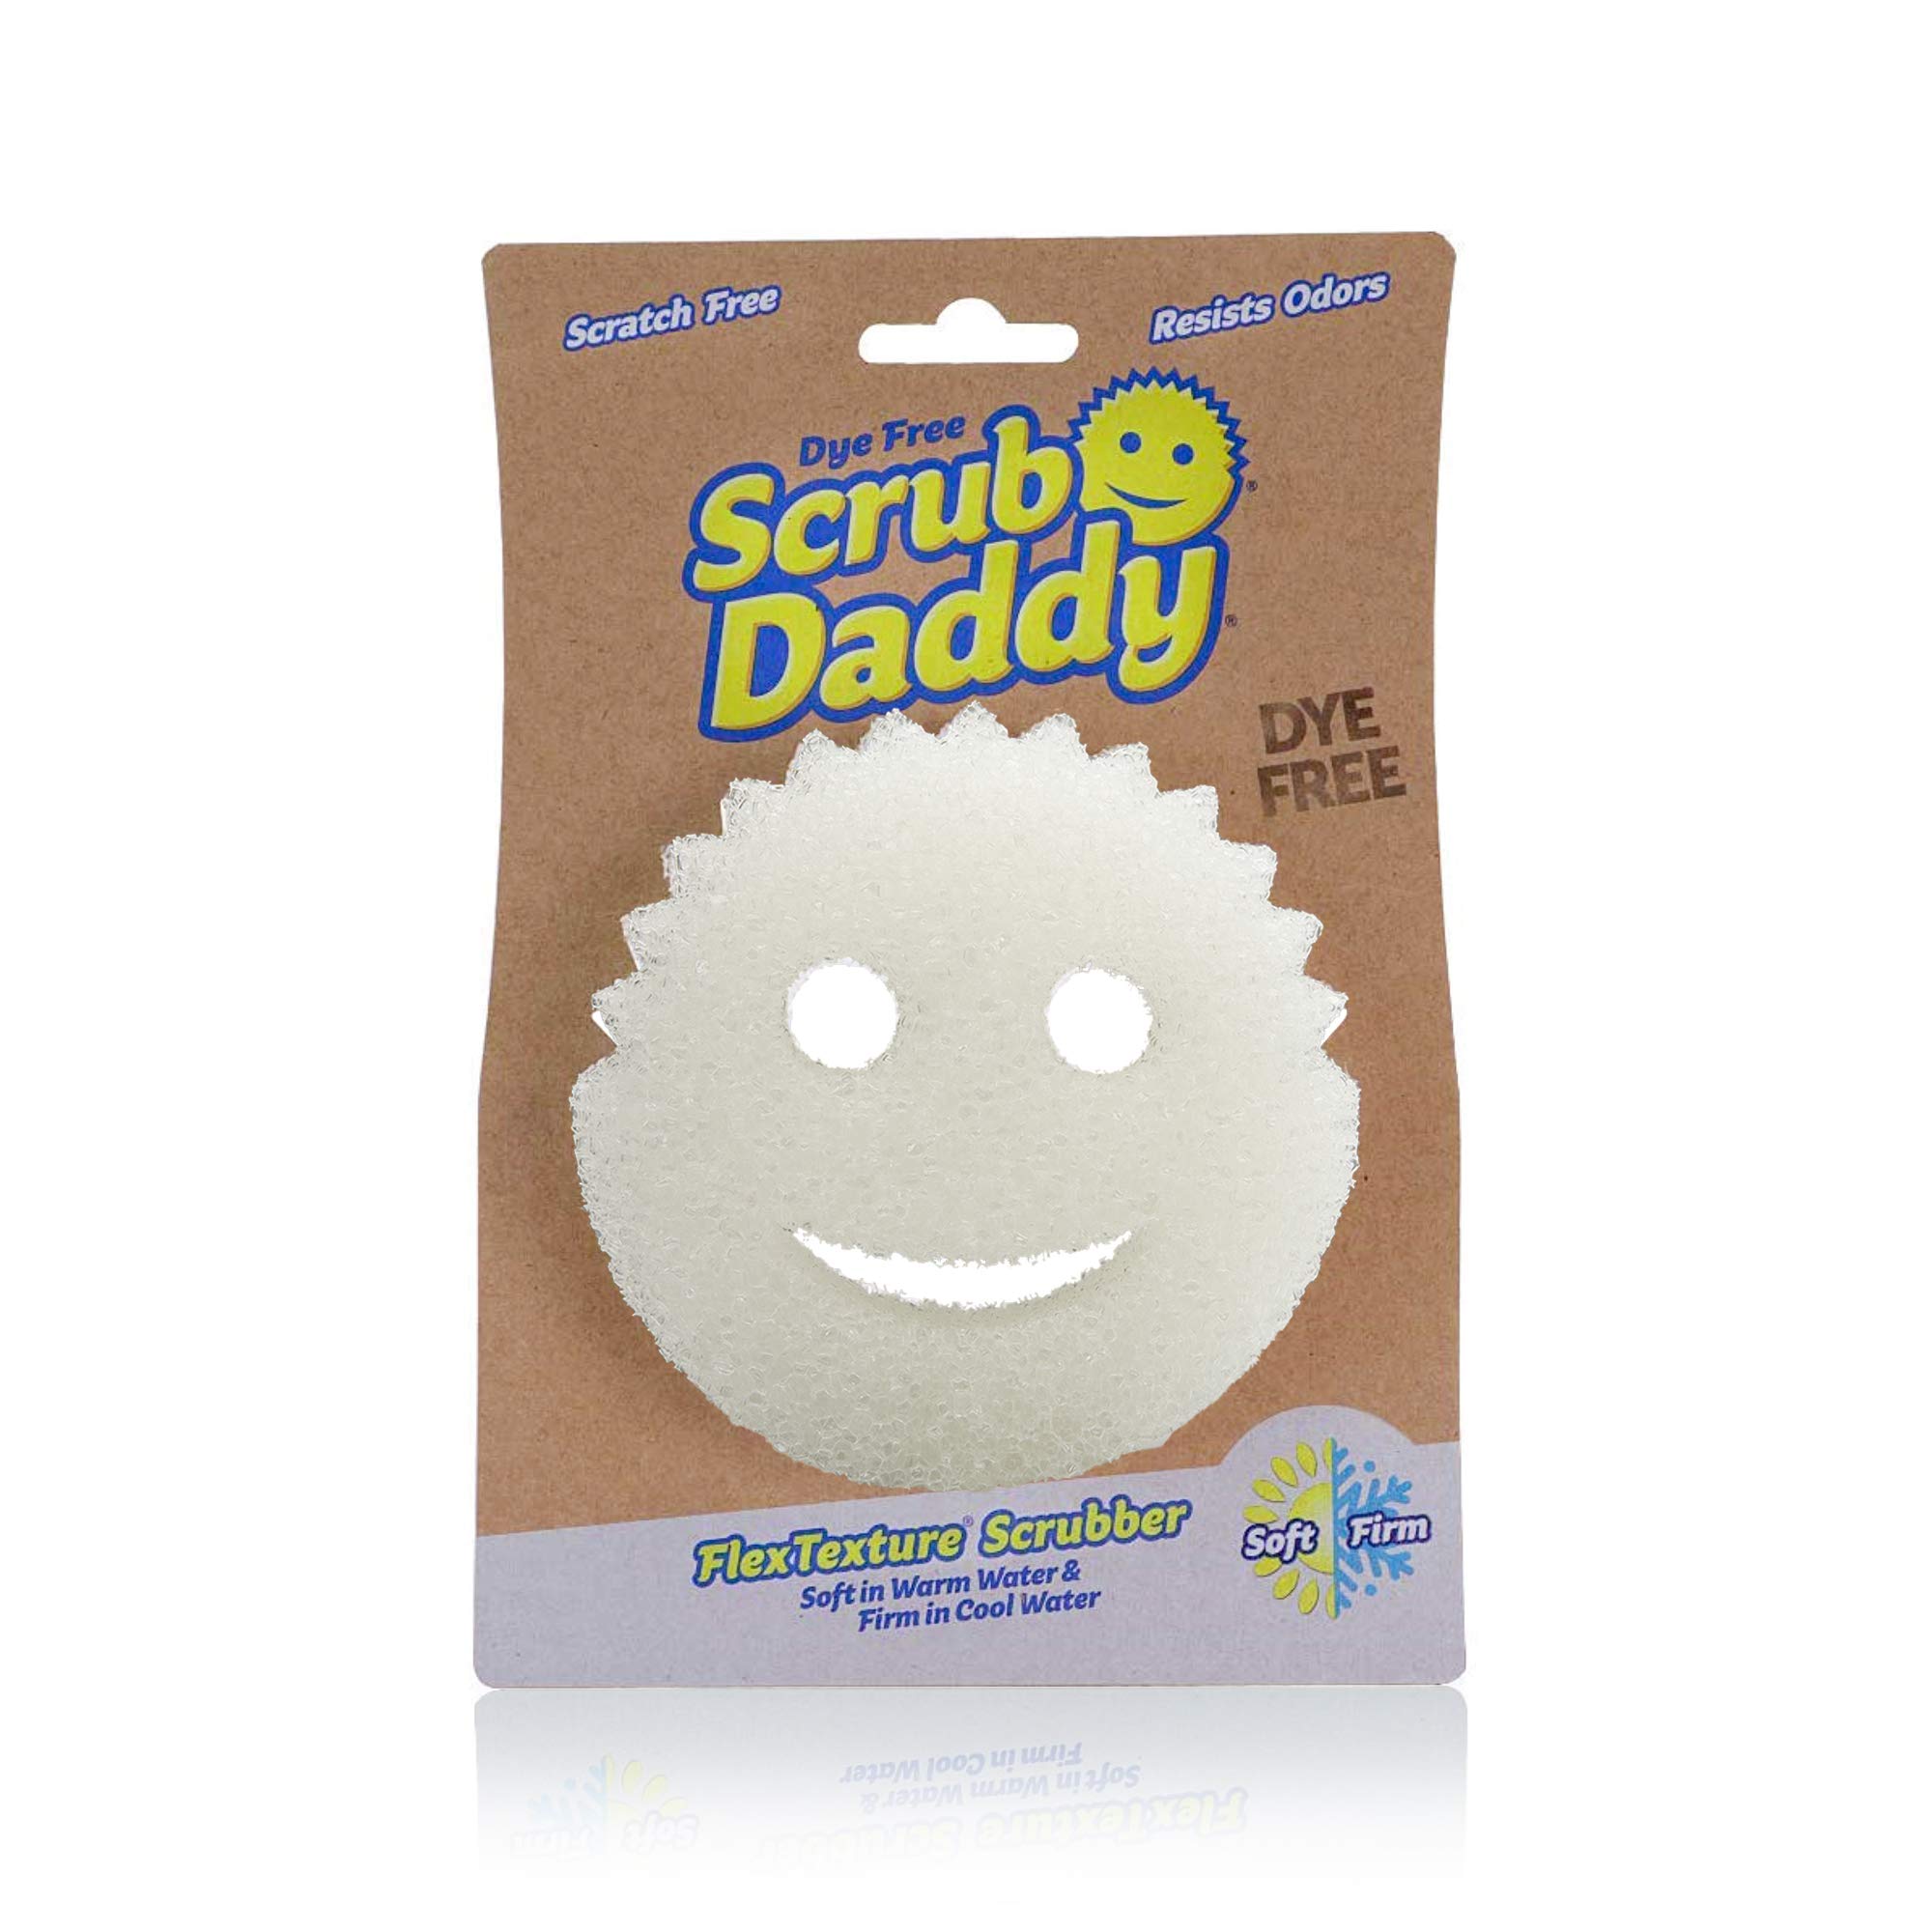 Scrub Daddy Dual-Sided Sponge and Scrubber- Scrub Mommy Dye Free, 1 Count 